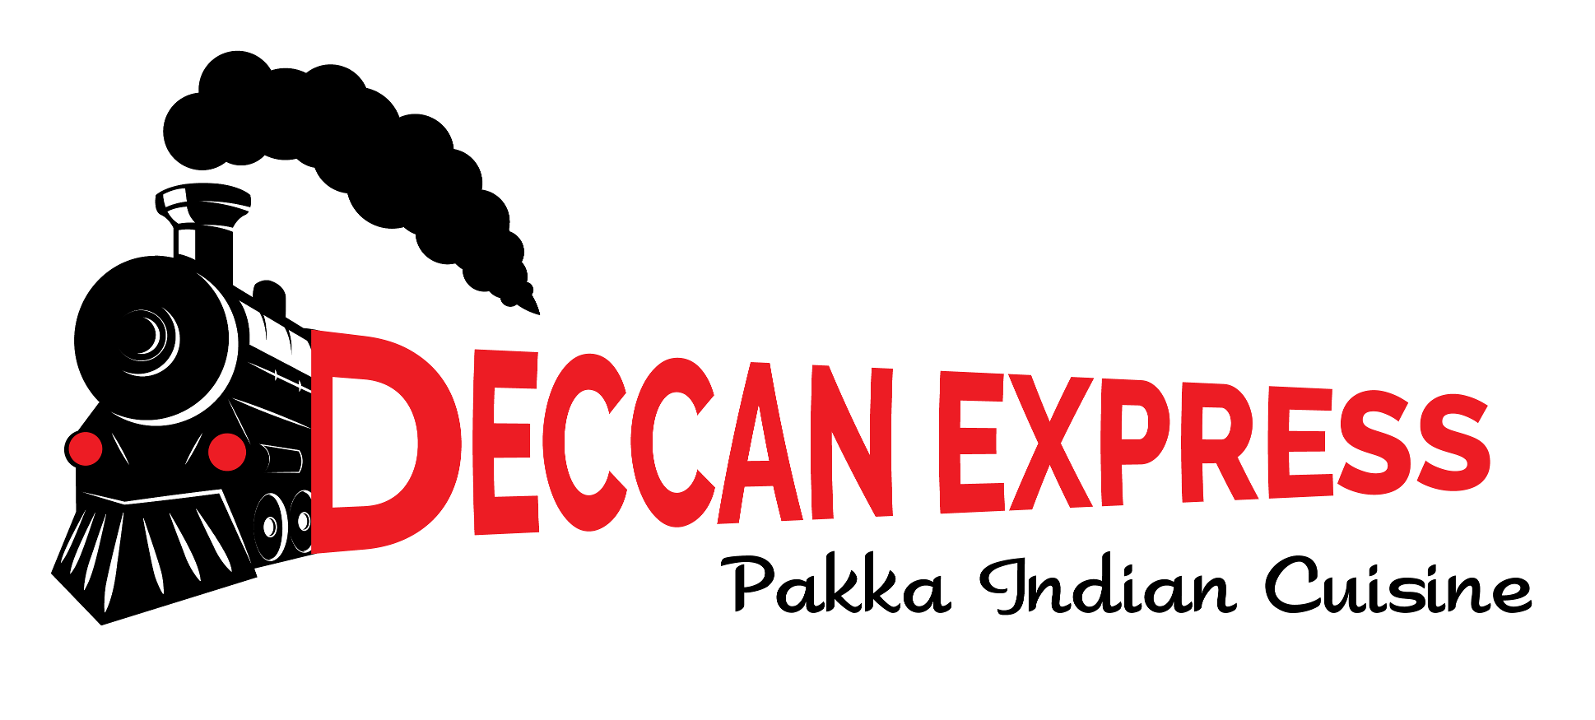 Deccan Express - Pakka Indian Cuisine